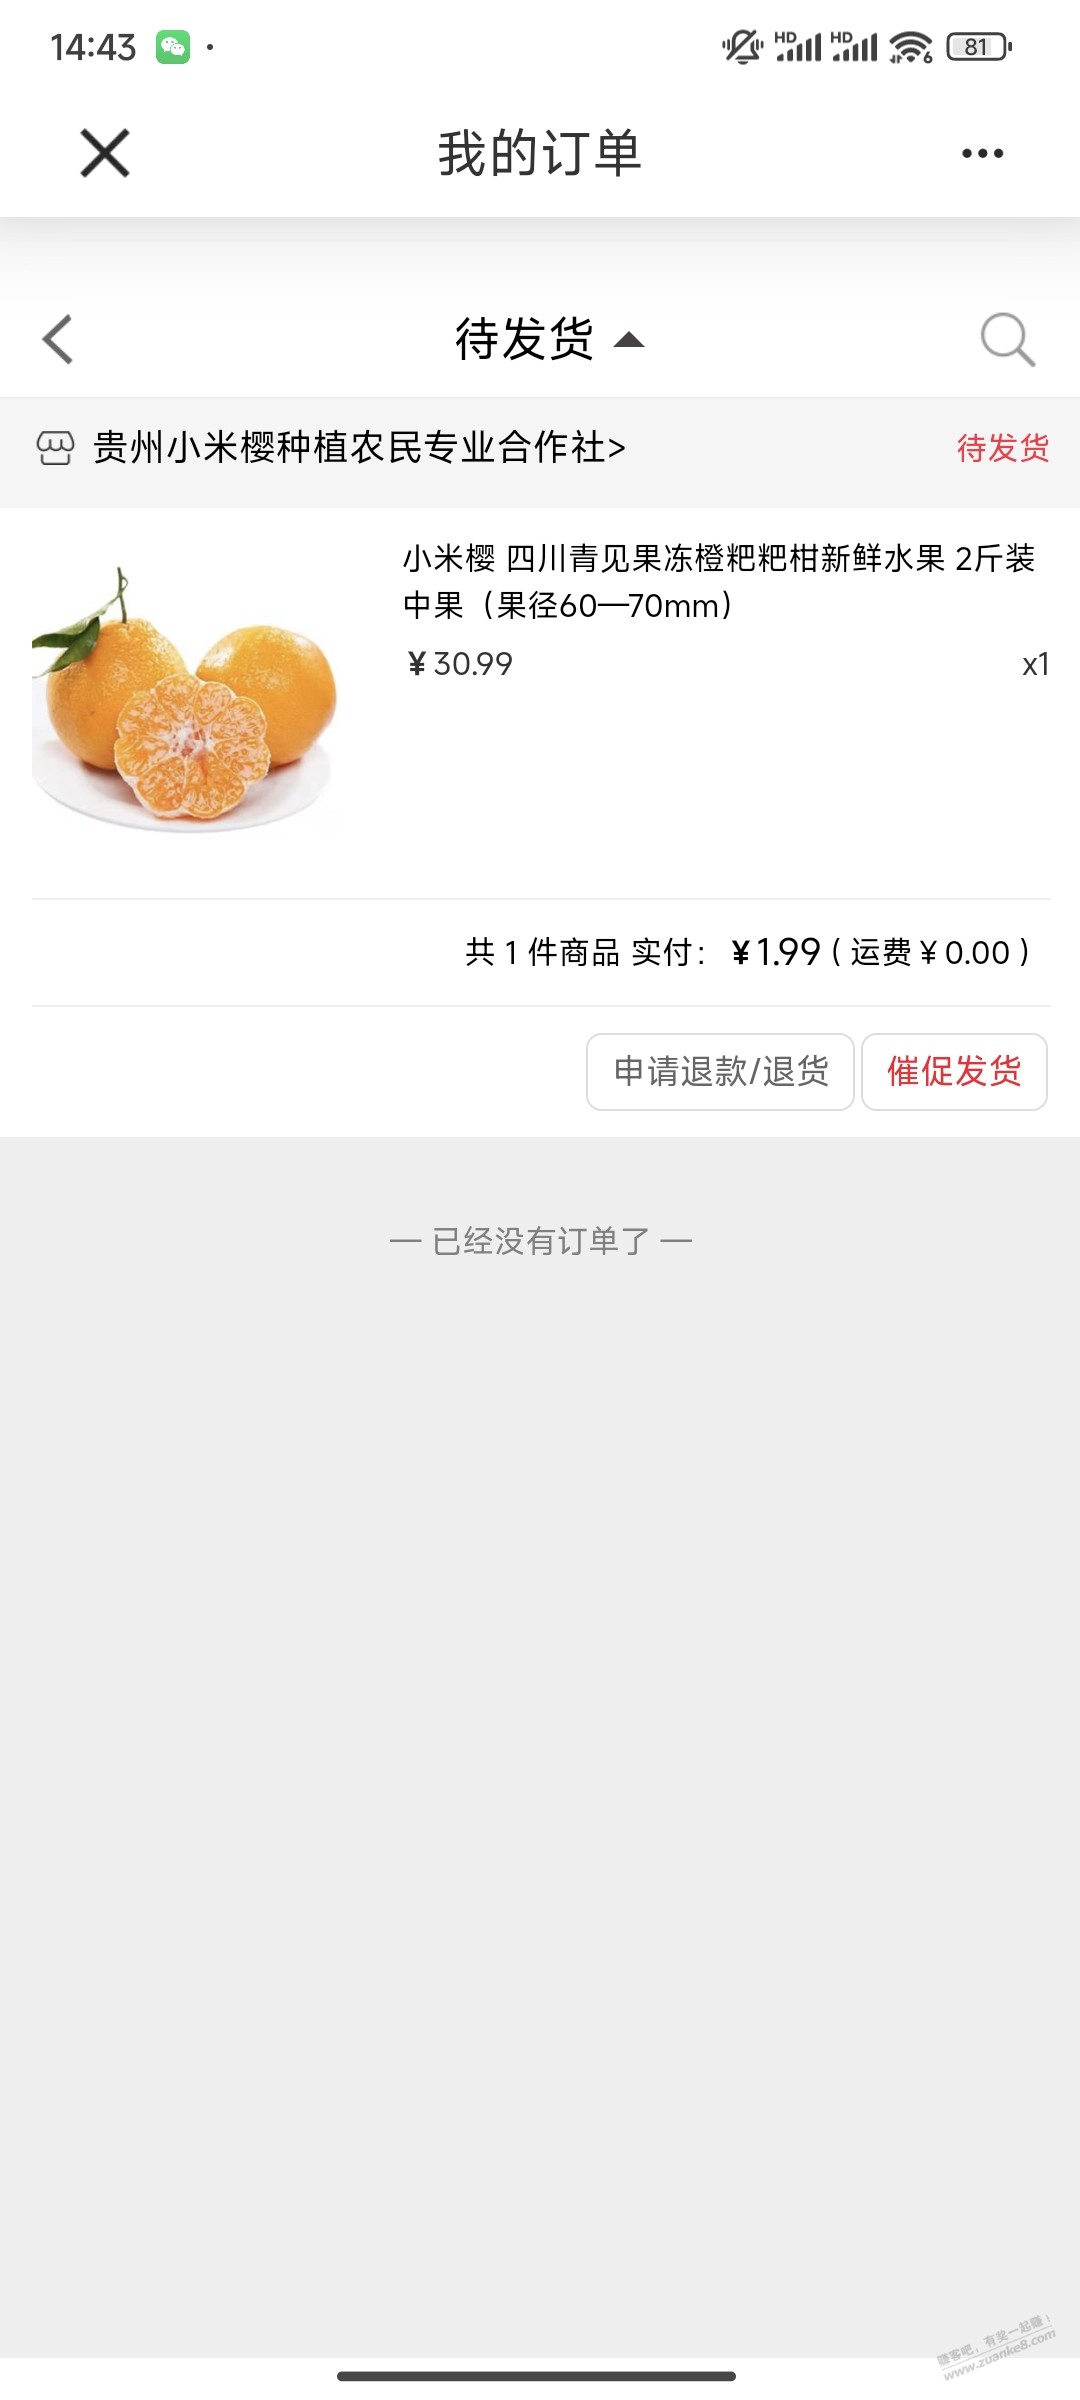 建行app搜善融商务-进去搜小米樱-1.9元2斤粑粑柑-惠小助(52huixz.com)